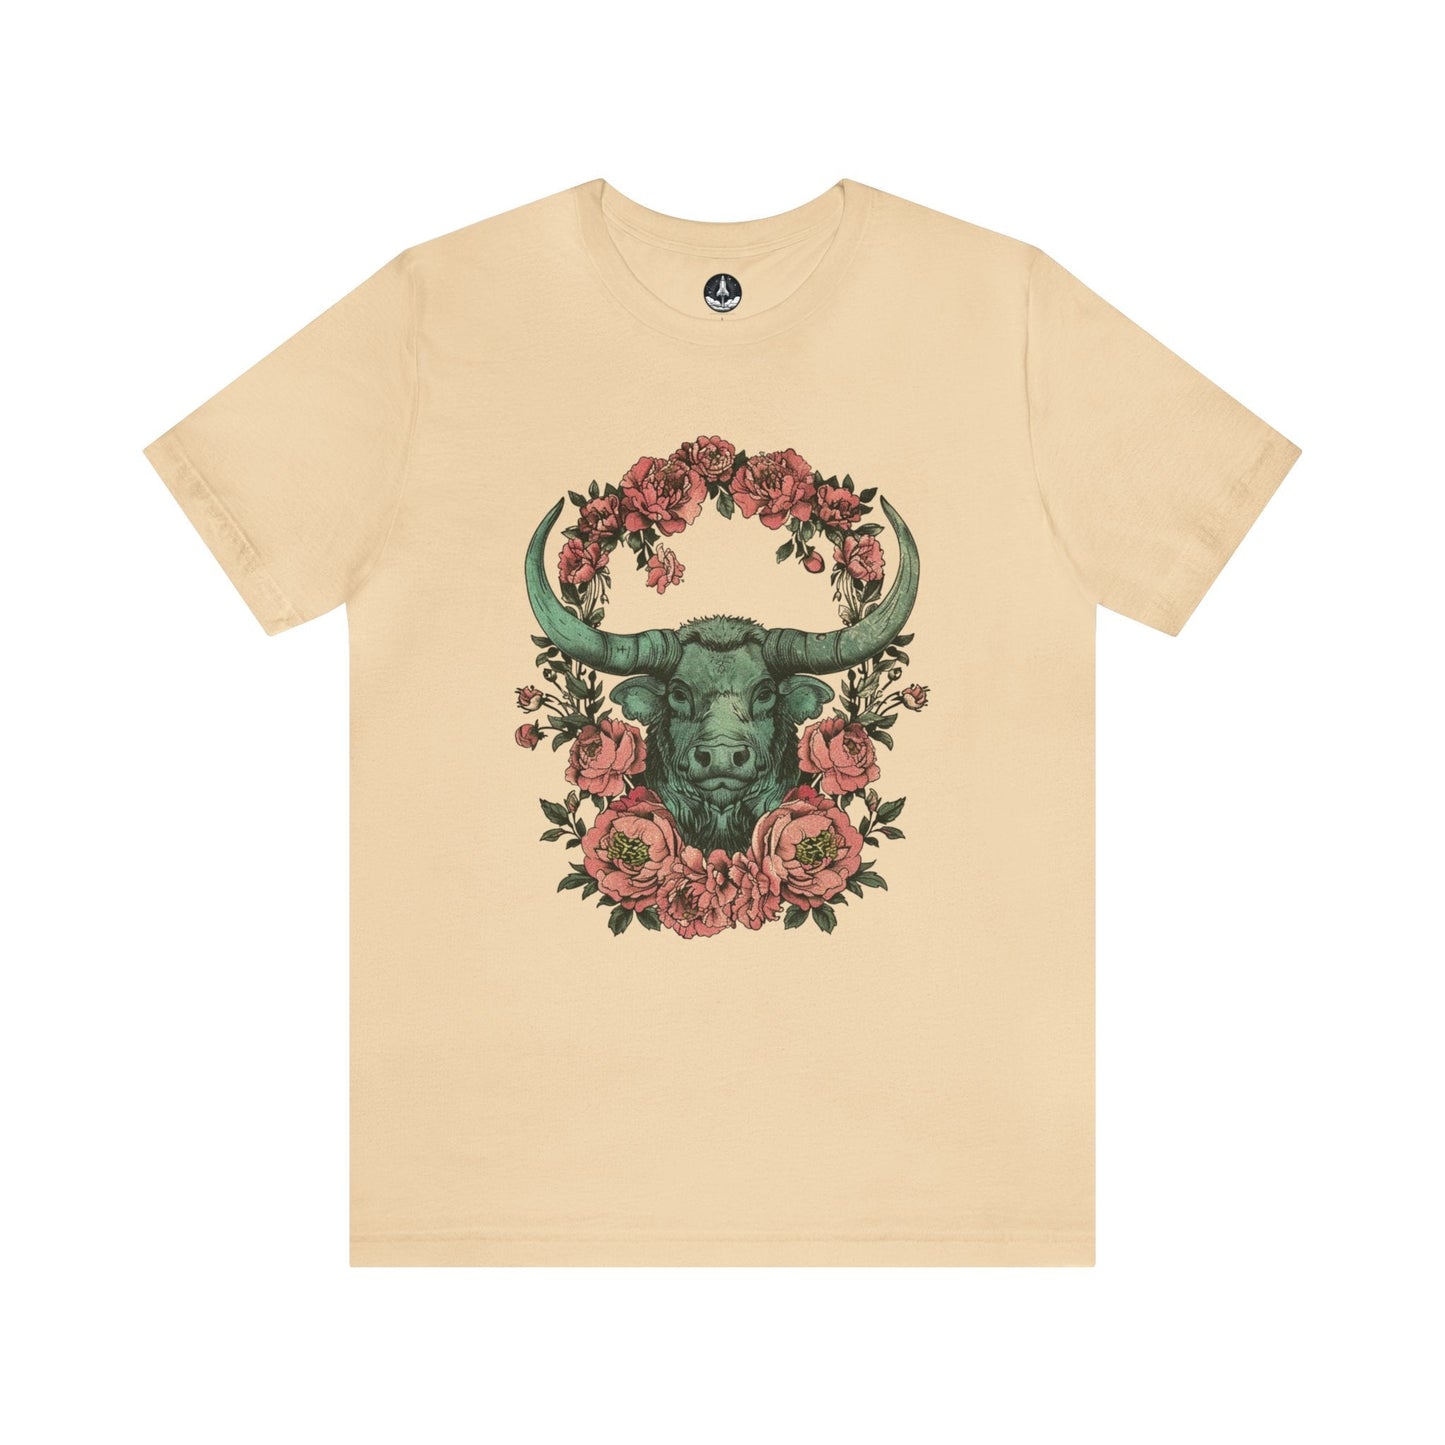 T-Shirt Soft Cream / S Taurus Ethereal Night T-Shirt